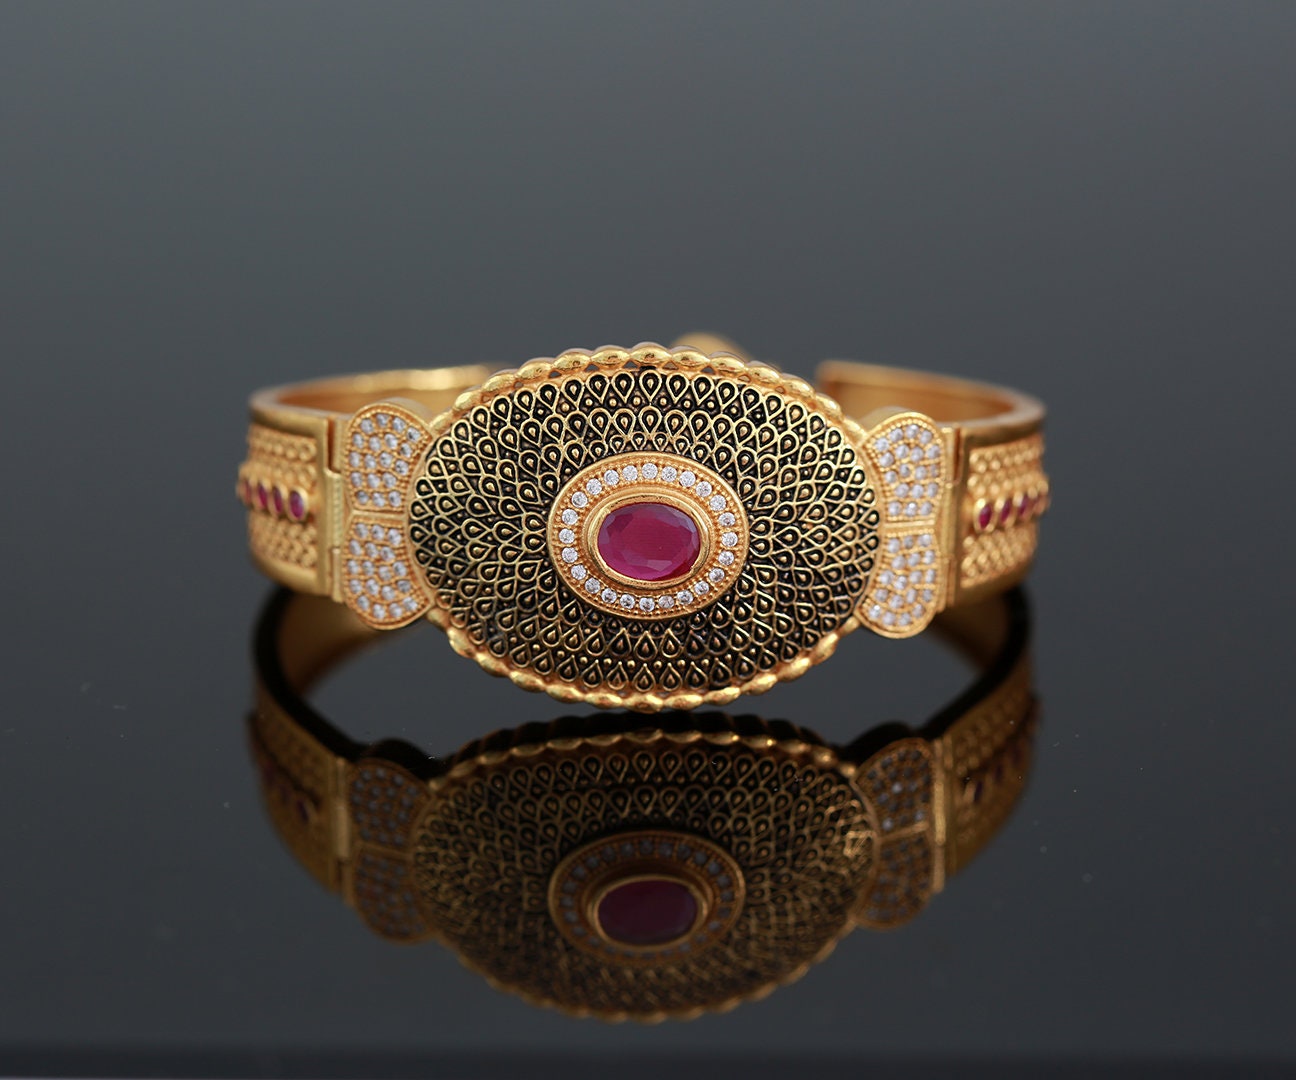 Rose Gold Ladies Lucky | Gold bracelet for girl, Gold bracelet simple, Gold  bracelet for women